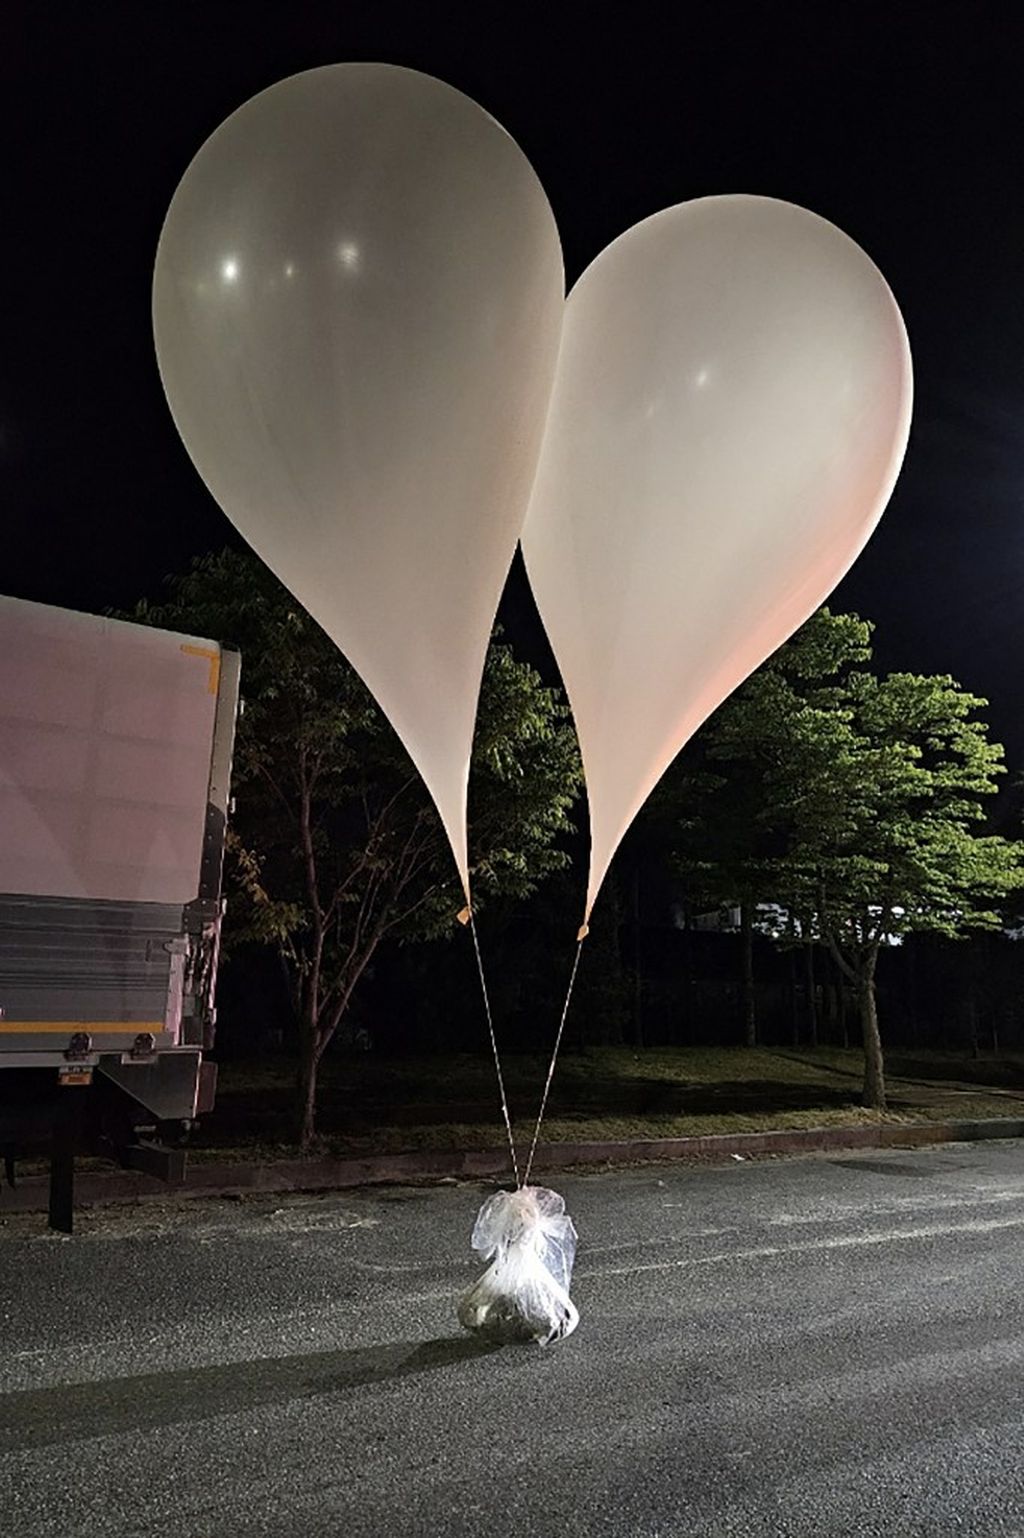 Jedan od puštenih balona